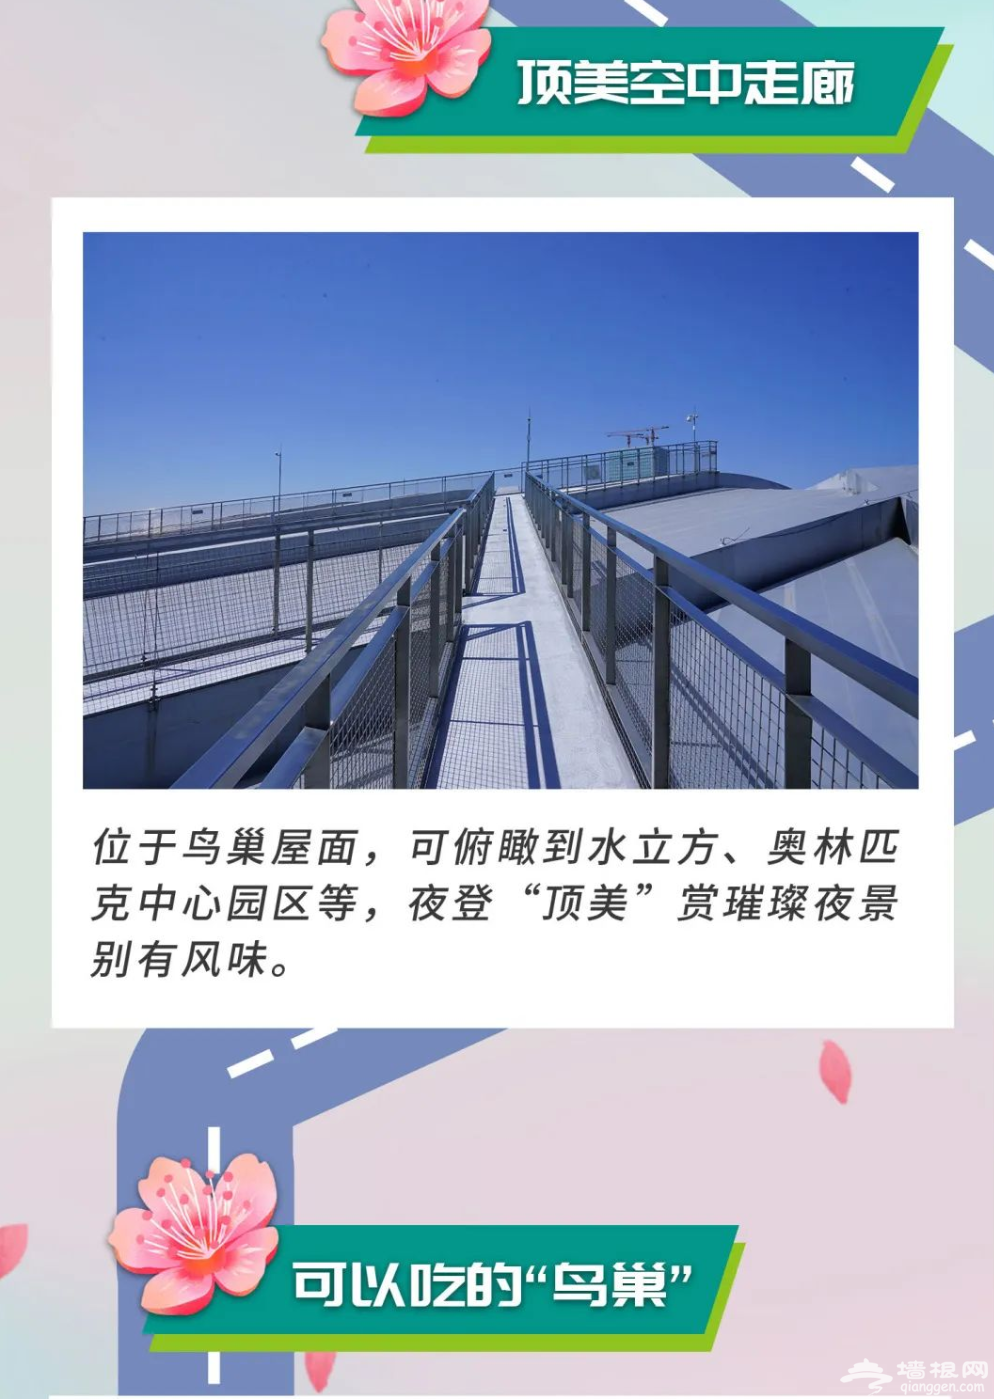 2022北京鸟巢双奥主题定制化精品旅游线路推荐（图解）[墙根网]